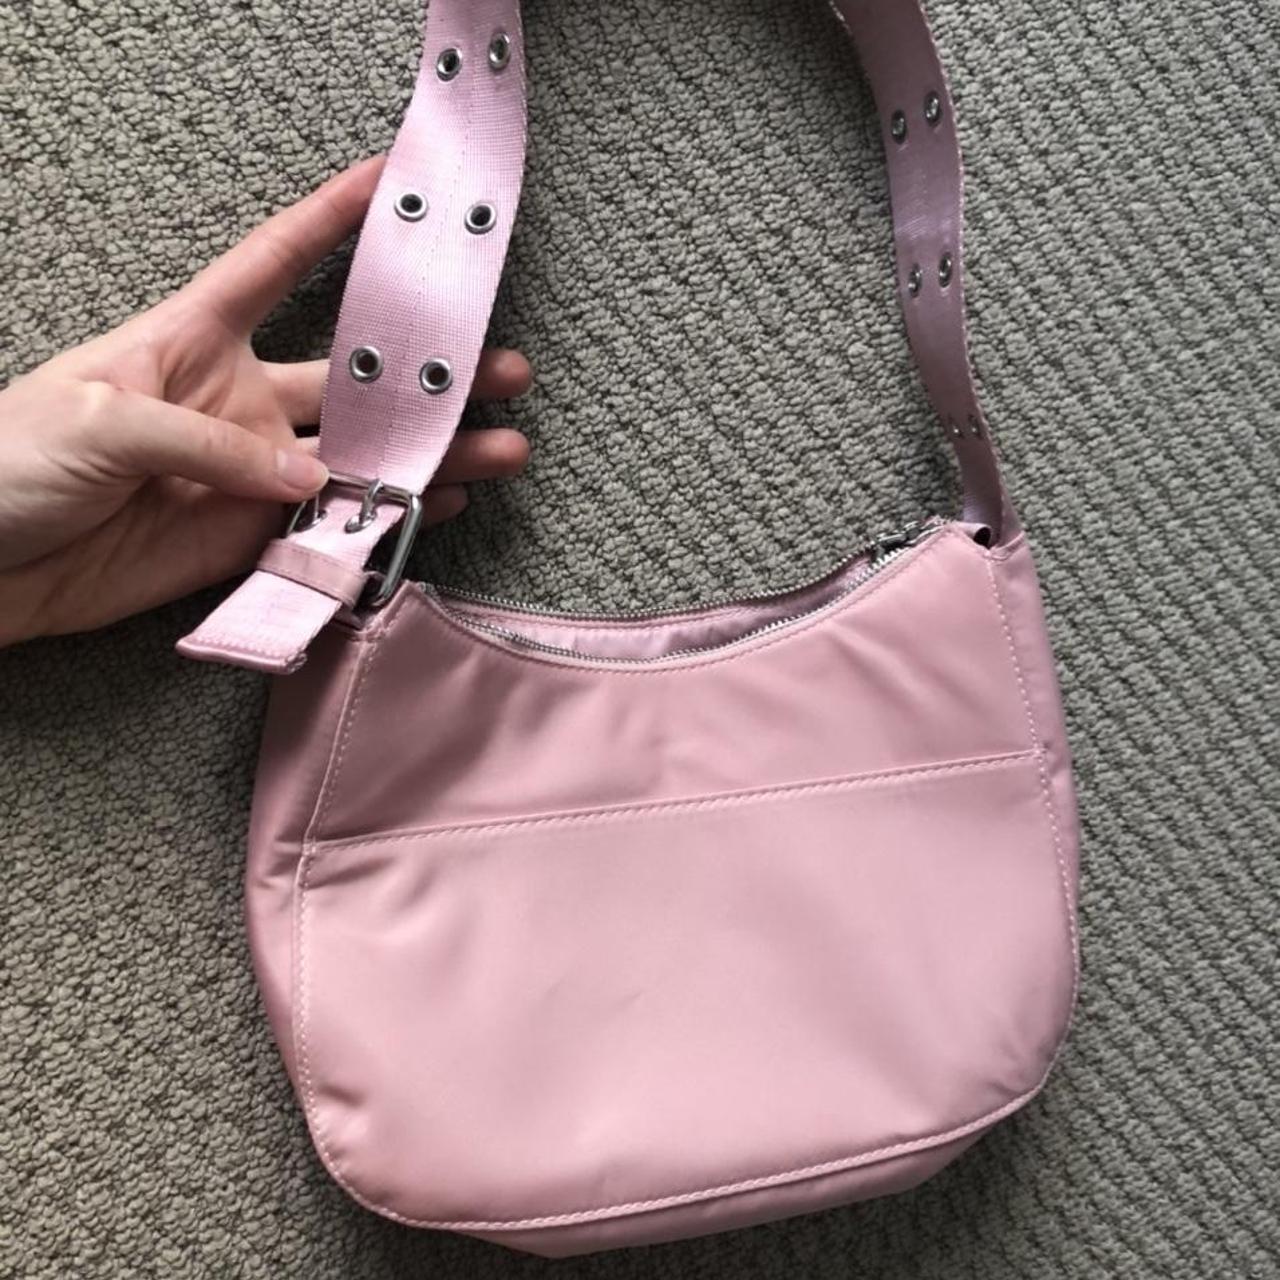 H&M pink nylon y2k shoulder bag with buckle and... - Depop